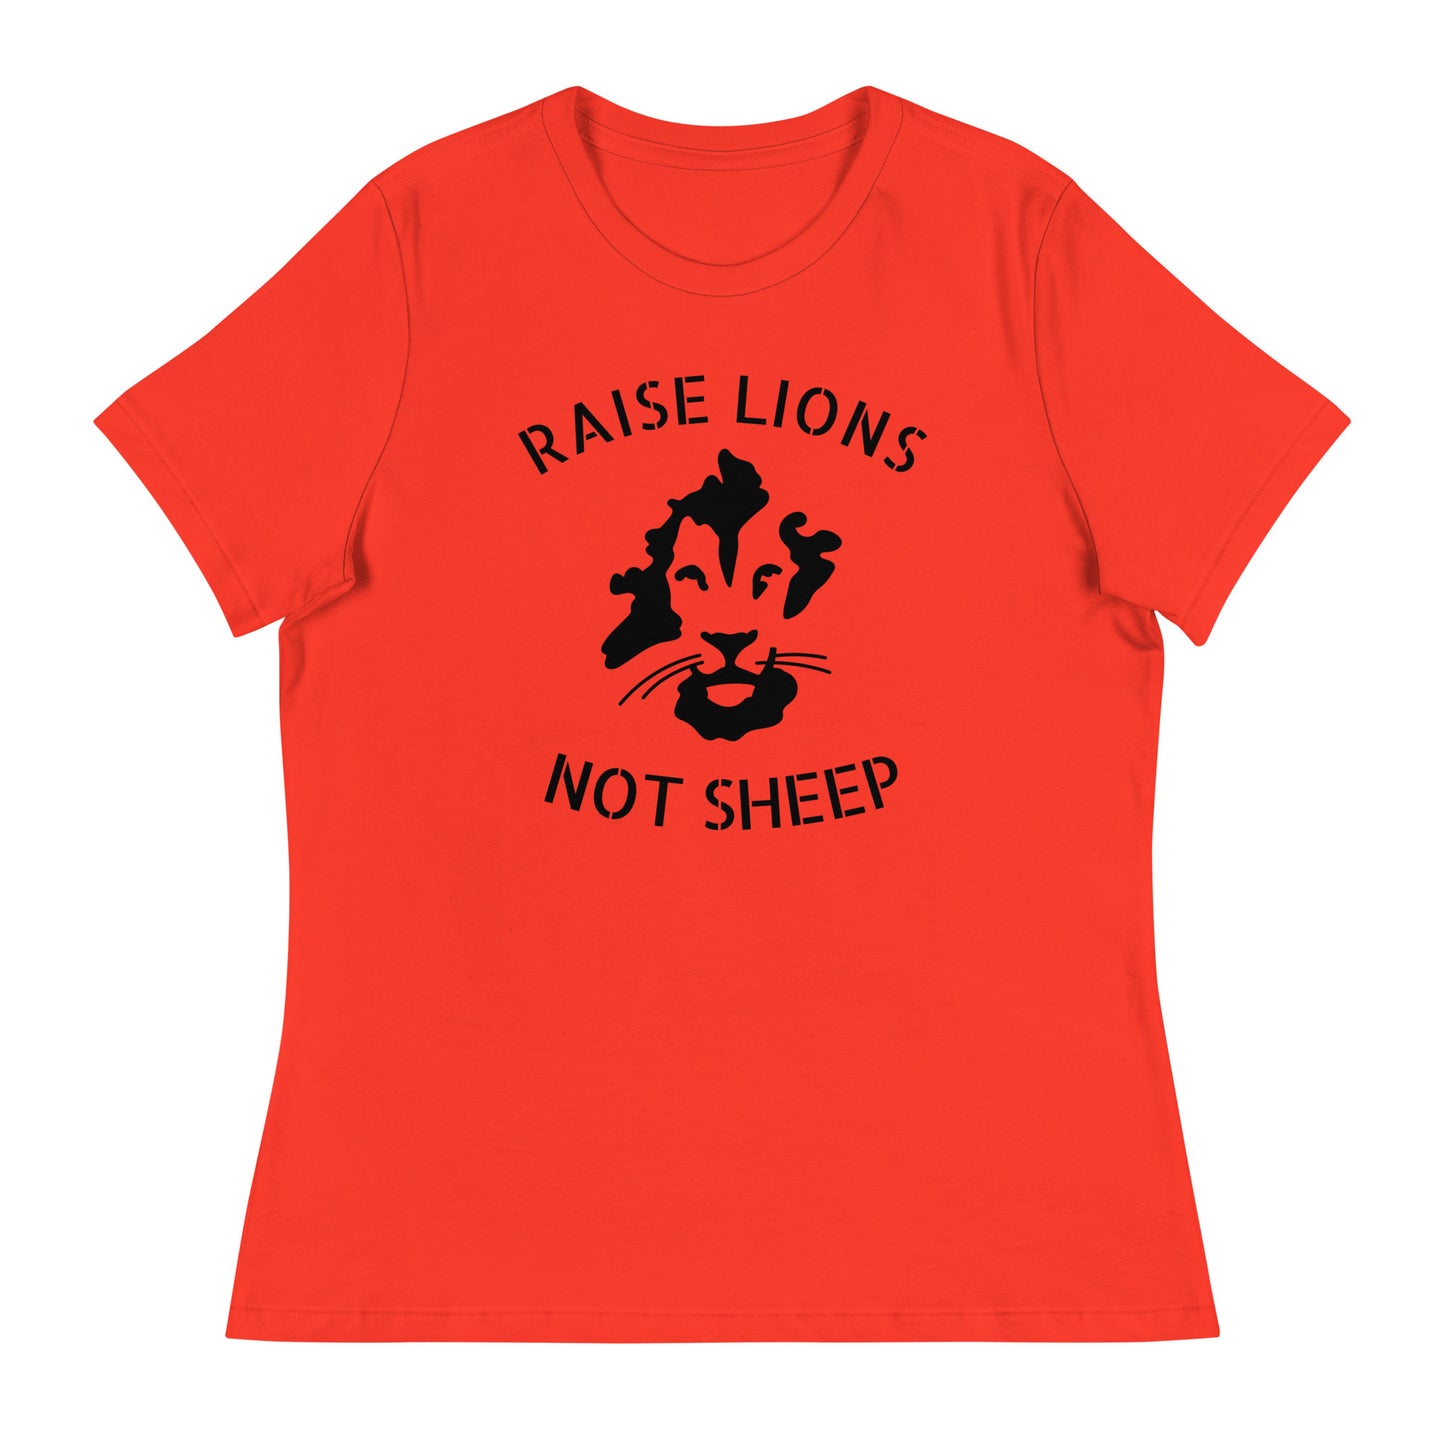 Raise LIONS not sheep women's tee